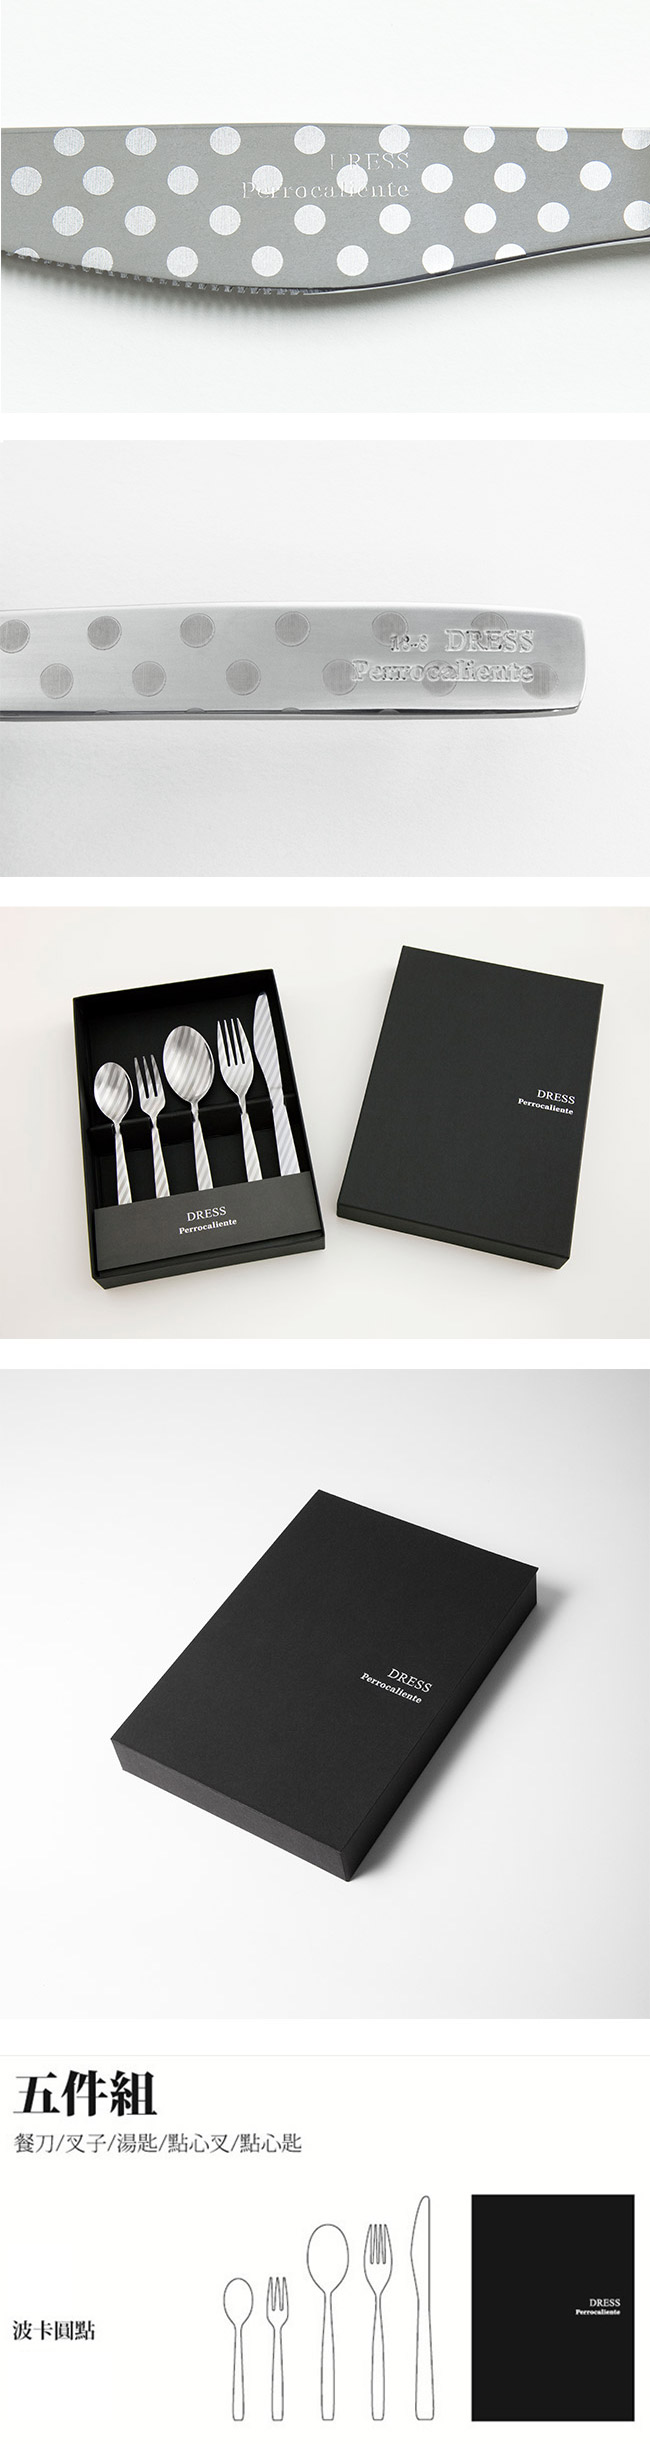 【4/23~4/29精選品牌9折優惠】Perrocaliente Dress Gift Set 銀色盒裝餐具組 五件組 波卡圓點